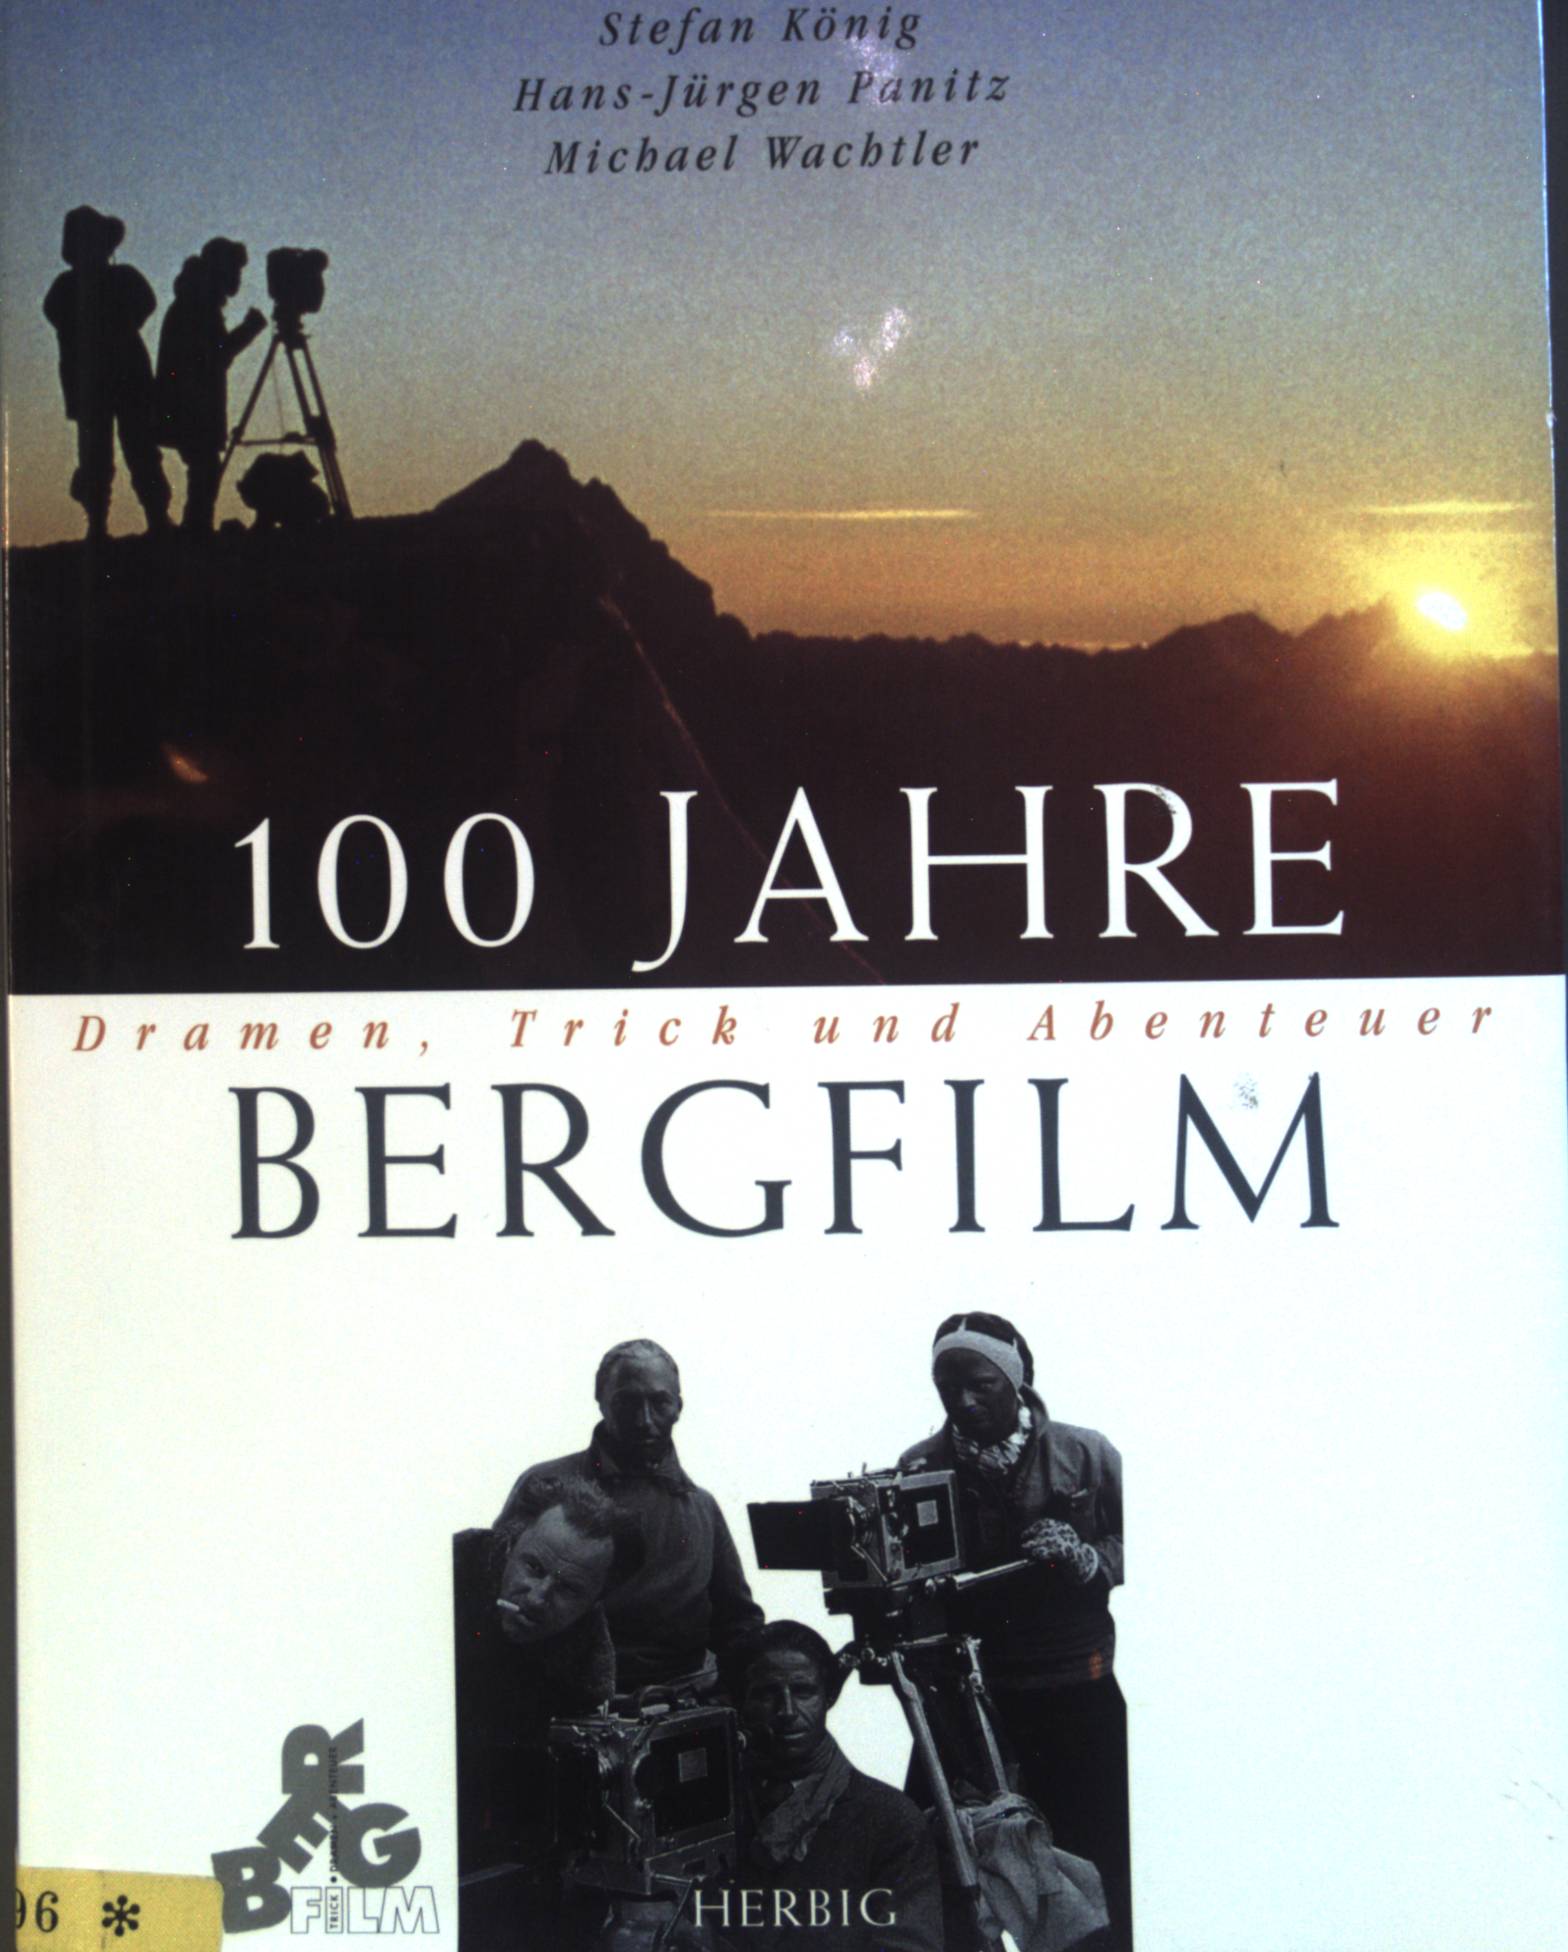 100 JahrebBergfilm. Dramen, Trick und Abenteuer. - Koenig, Stefan, Hans-Jürgen Panitz Michael Wachtler u. a.